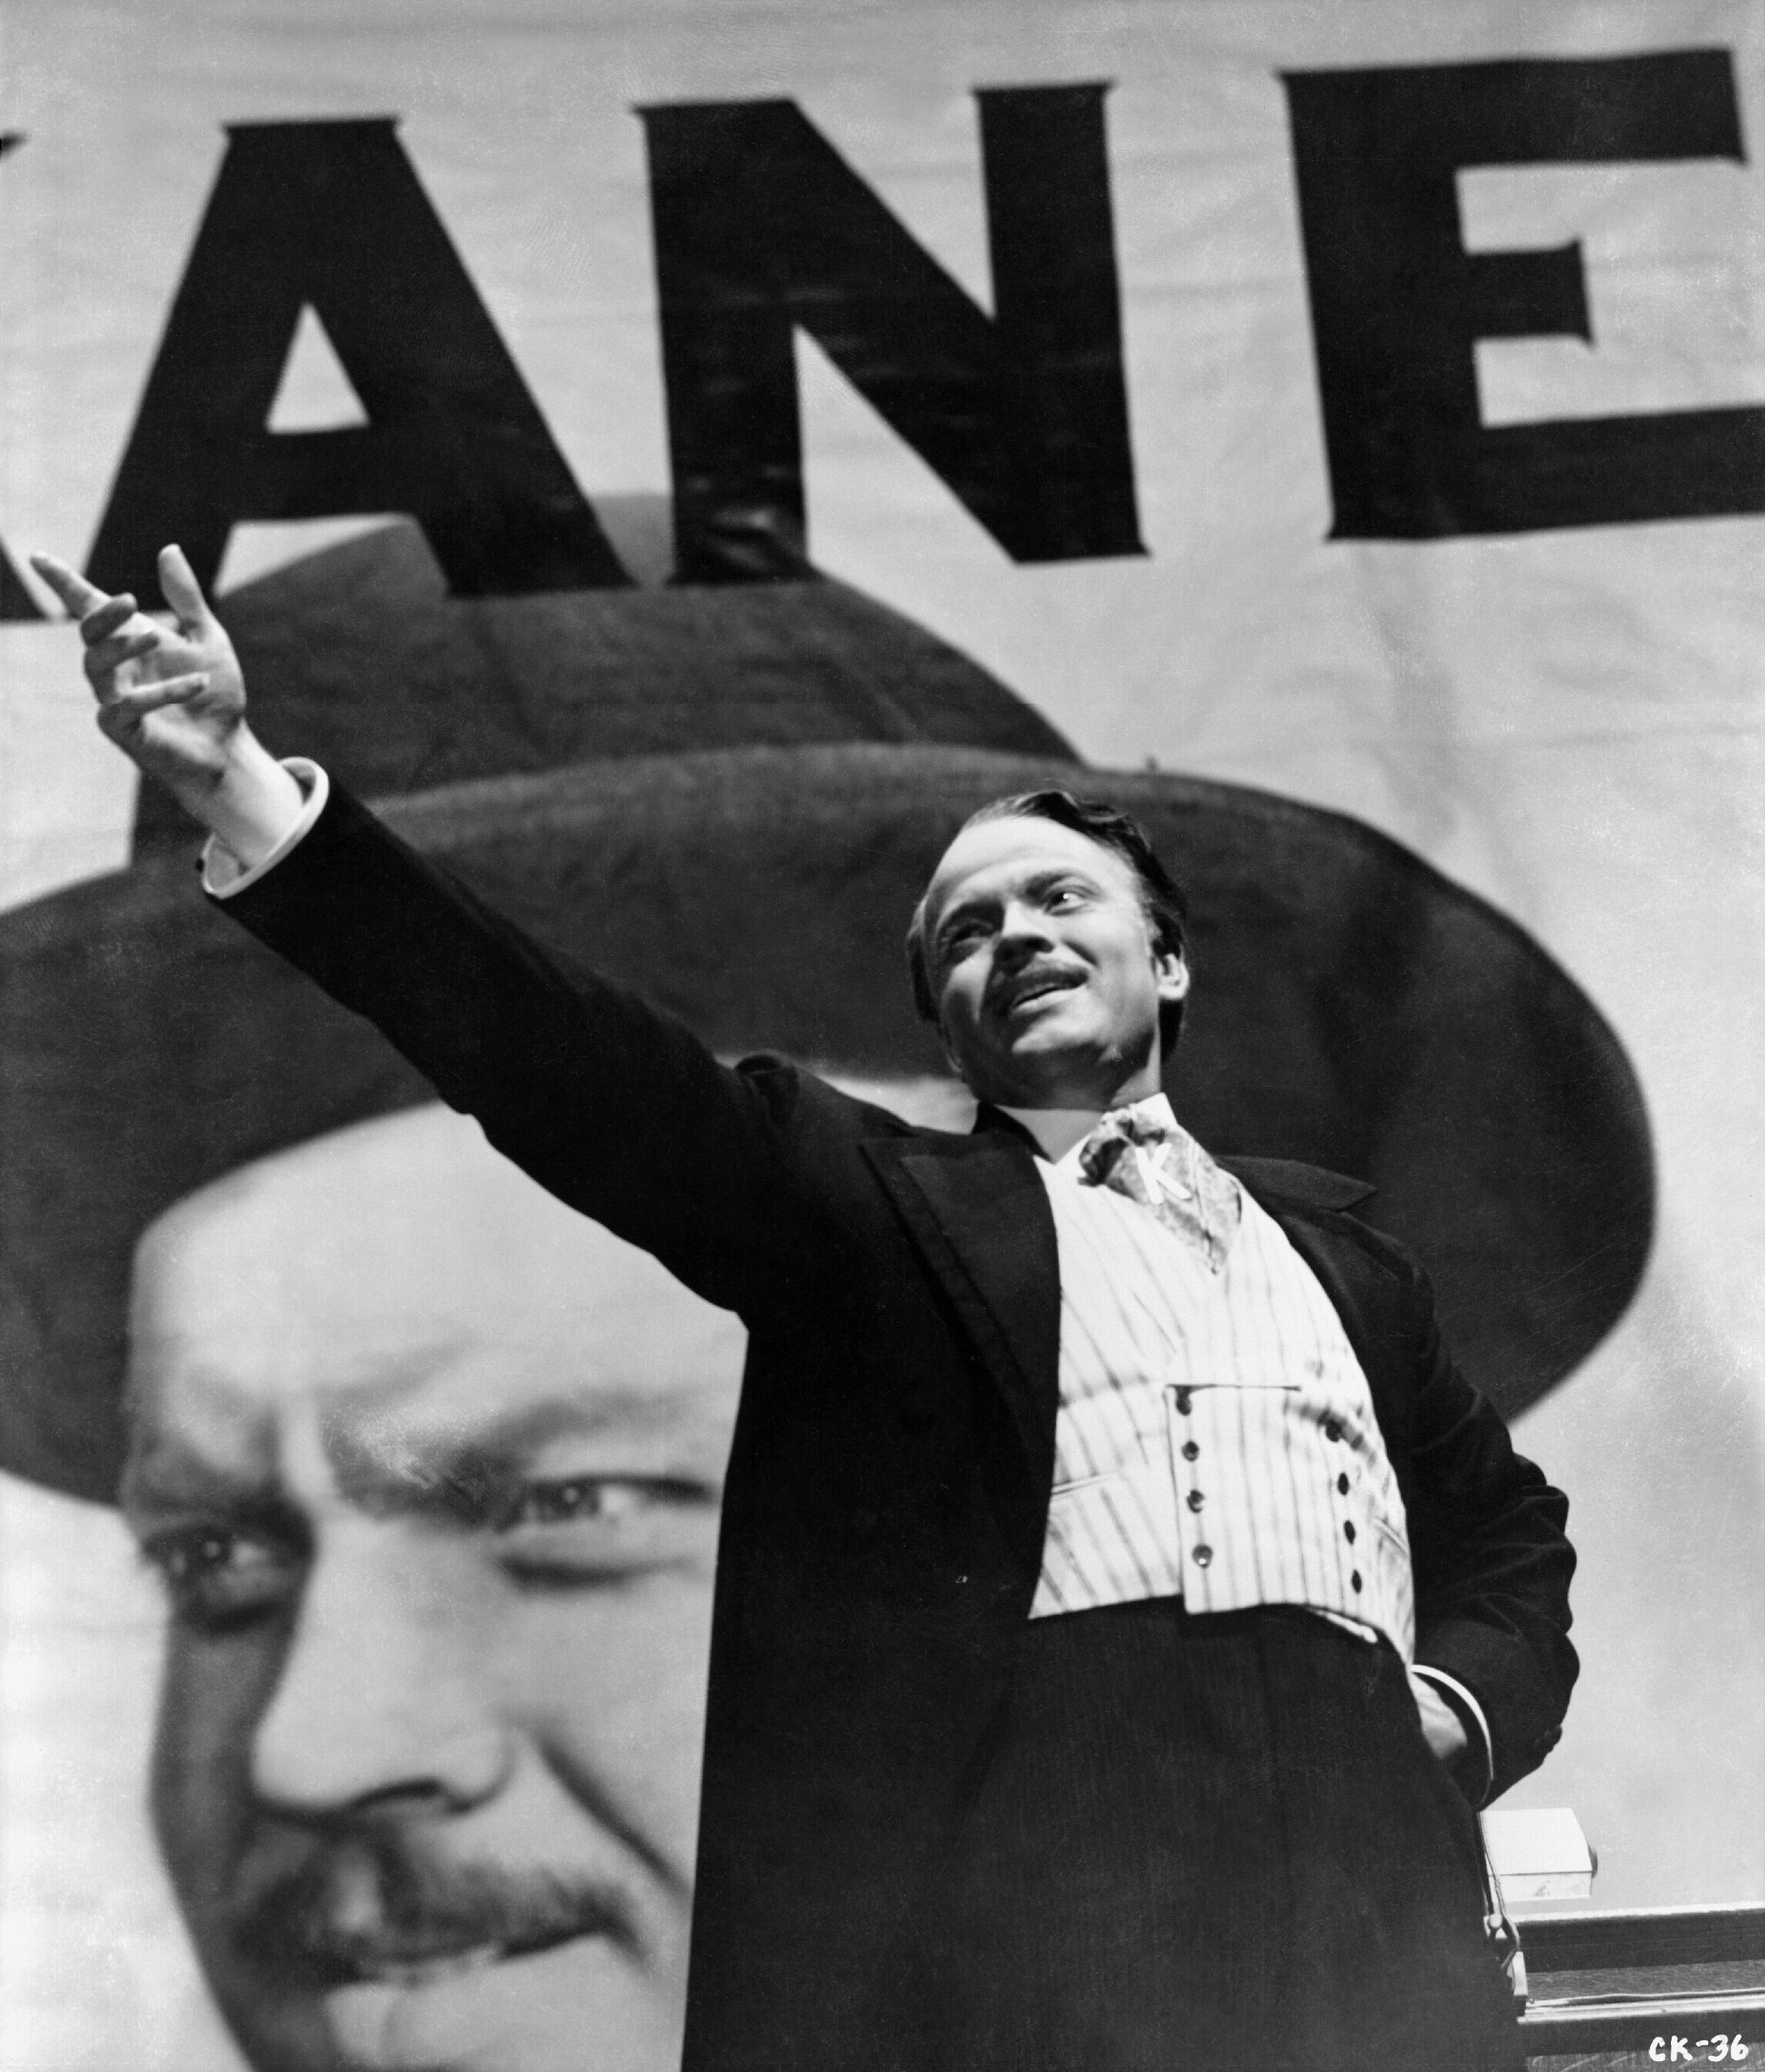 Citizen Kane Backgrounds, Compatible - PC, Mobile, Gadgets| 2290x2689 px